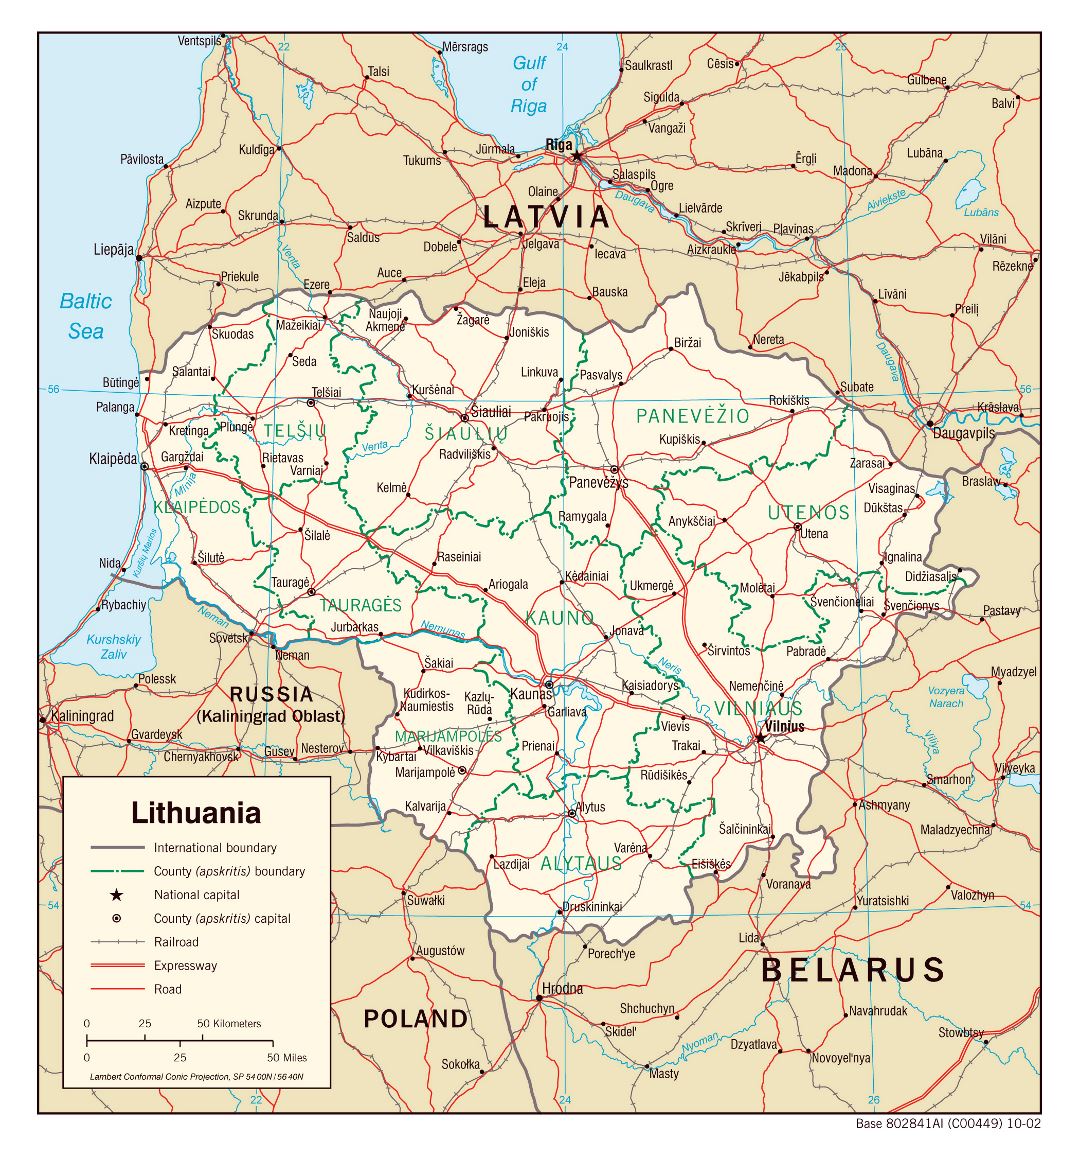 Gran escala mapa político y administrativo de Lituania con carreteras, ferrocarriles y principales ciudades - 2002